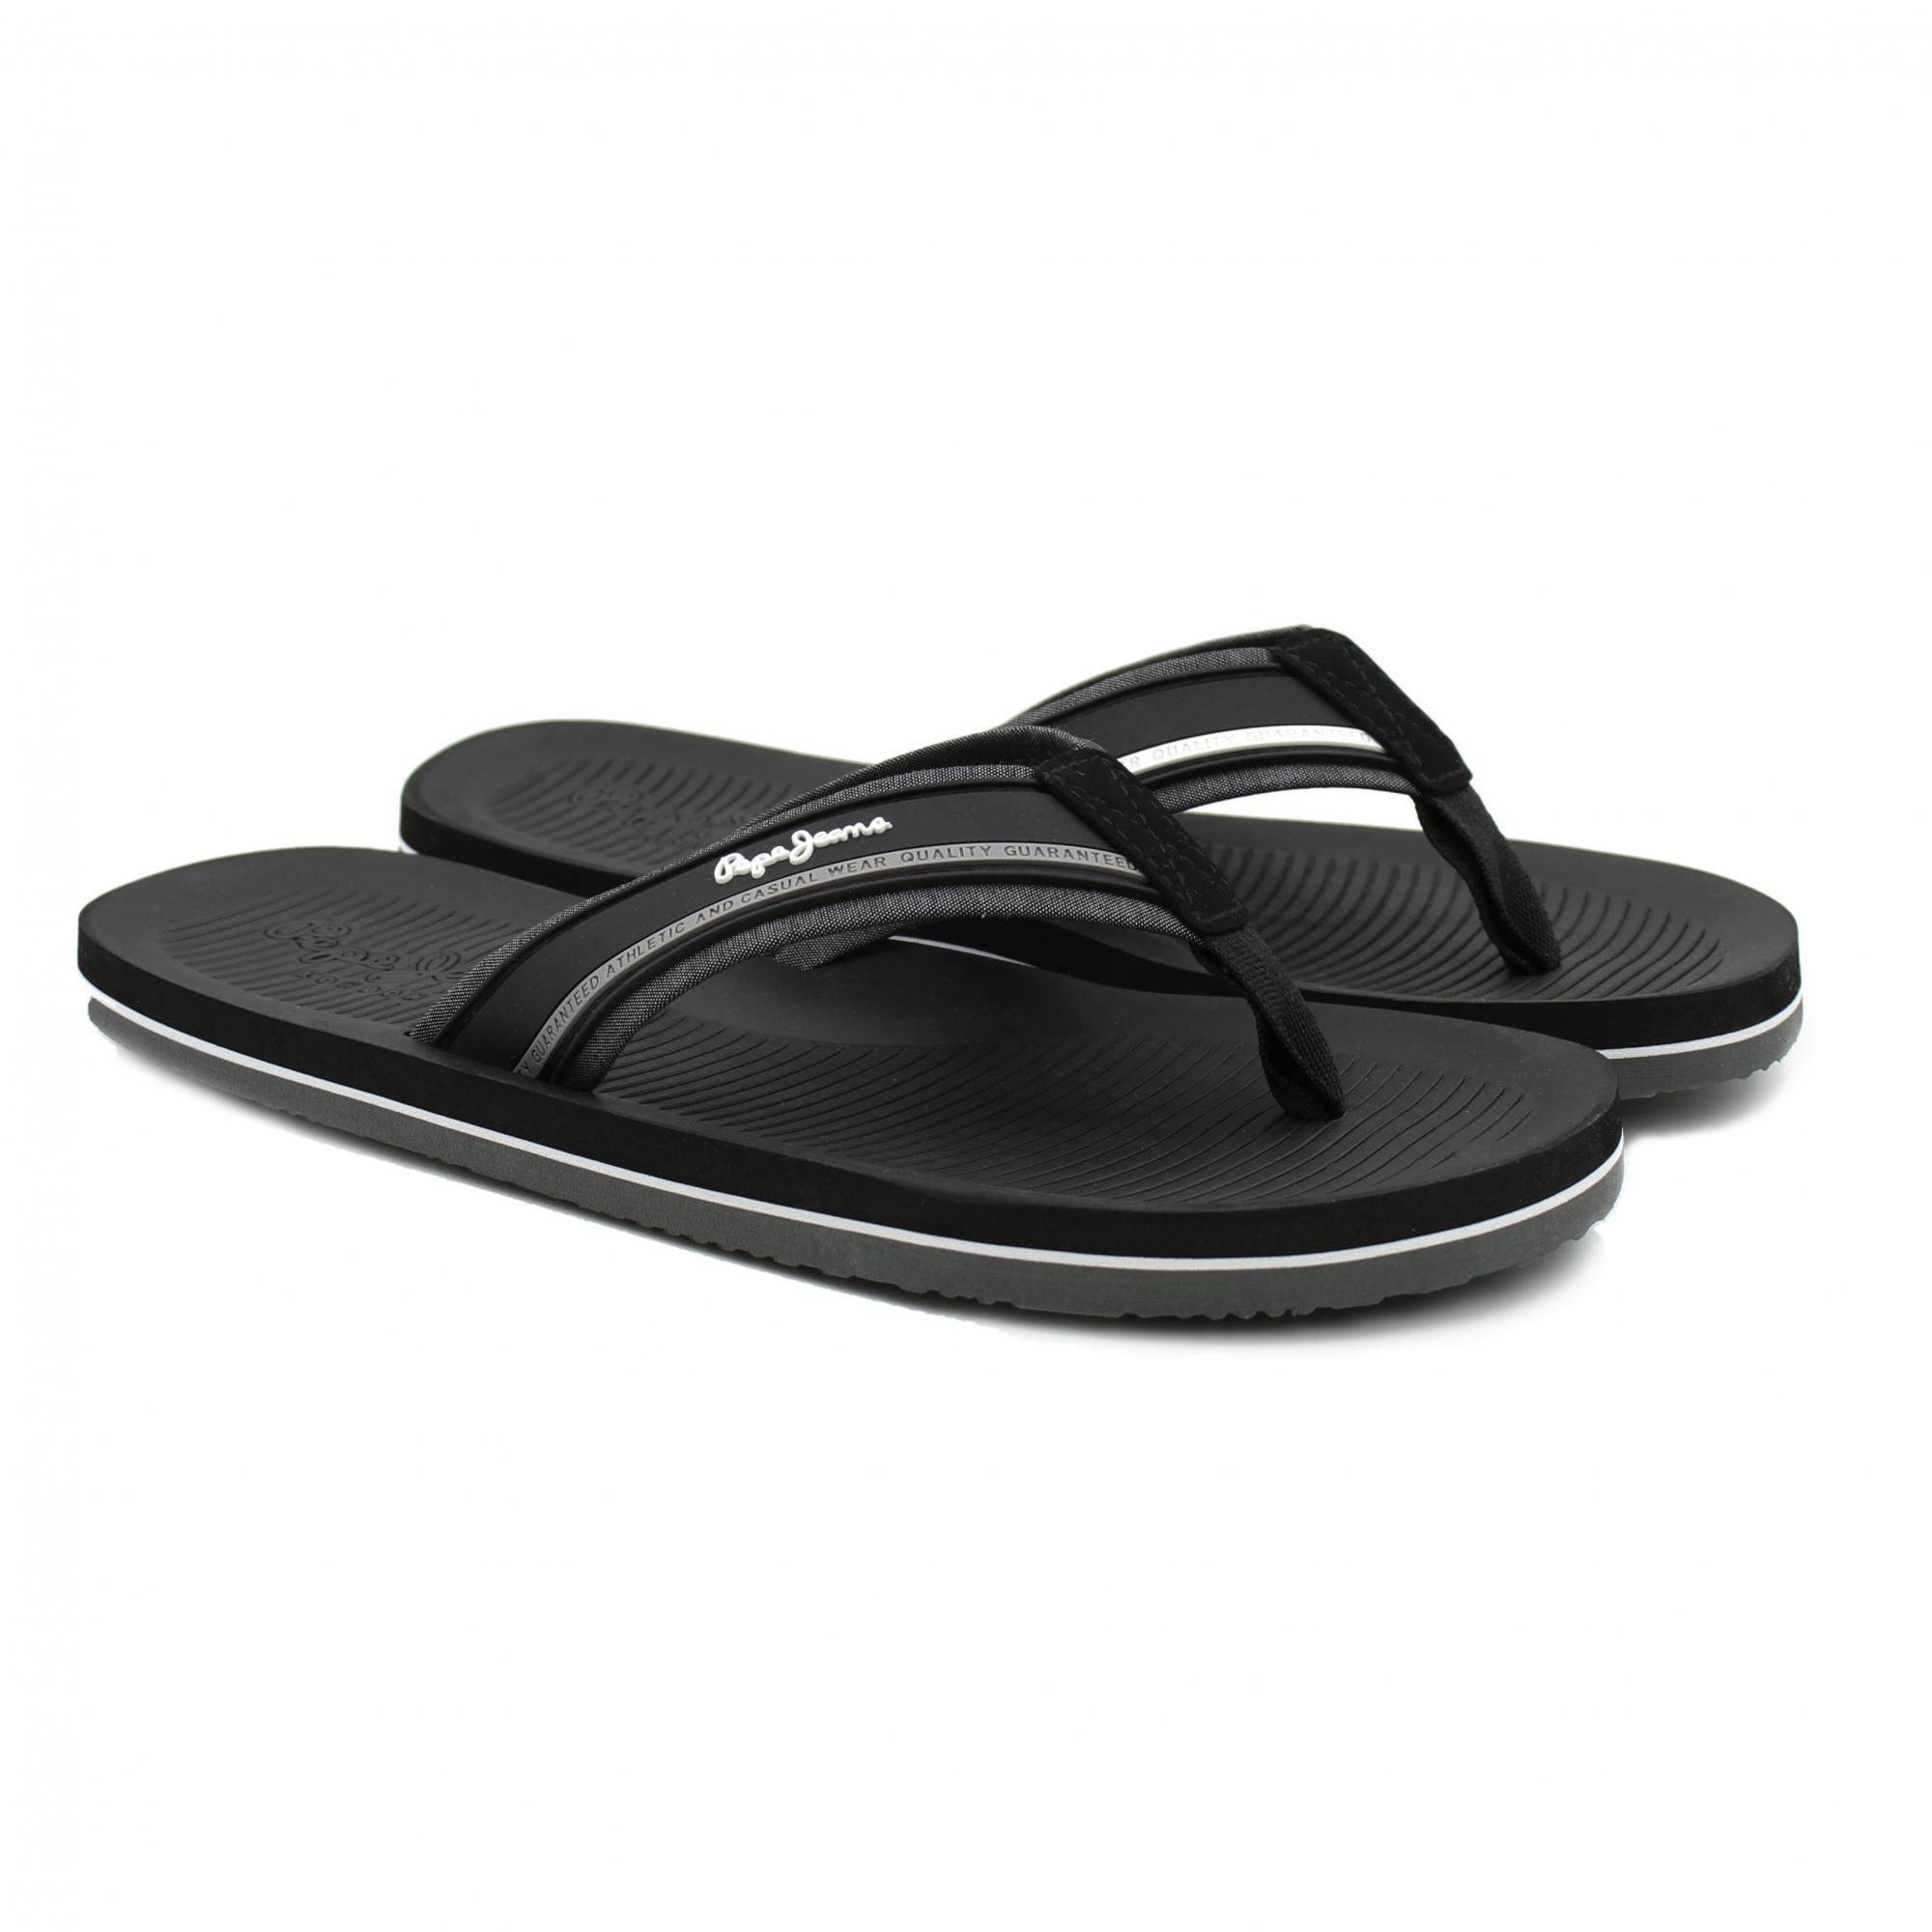 Мужские сандалии Pepe Jeans London(SOUTH BEACH PMS70106), черные, цвет черный, размер 41 - фото 1